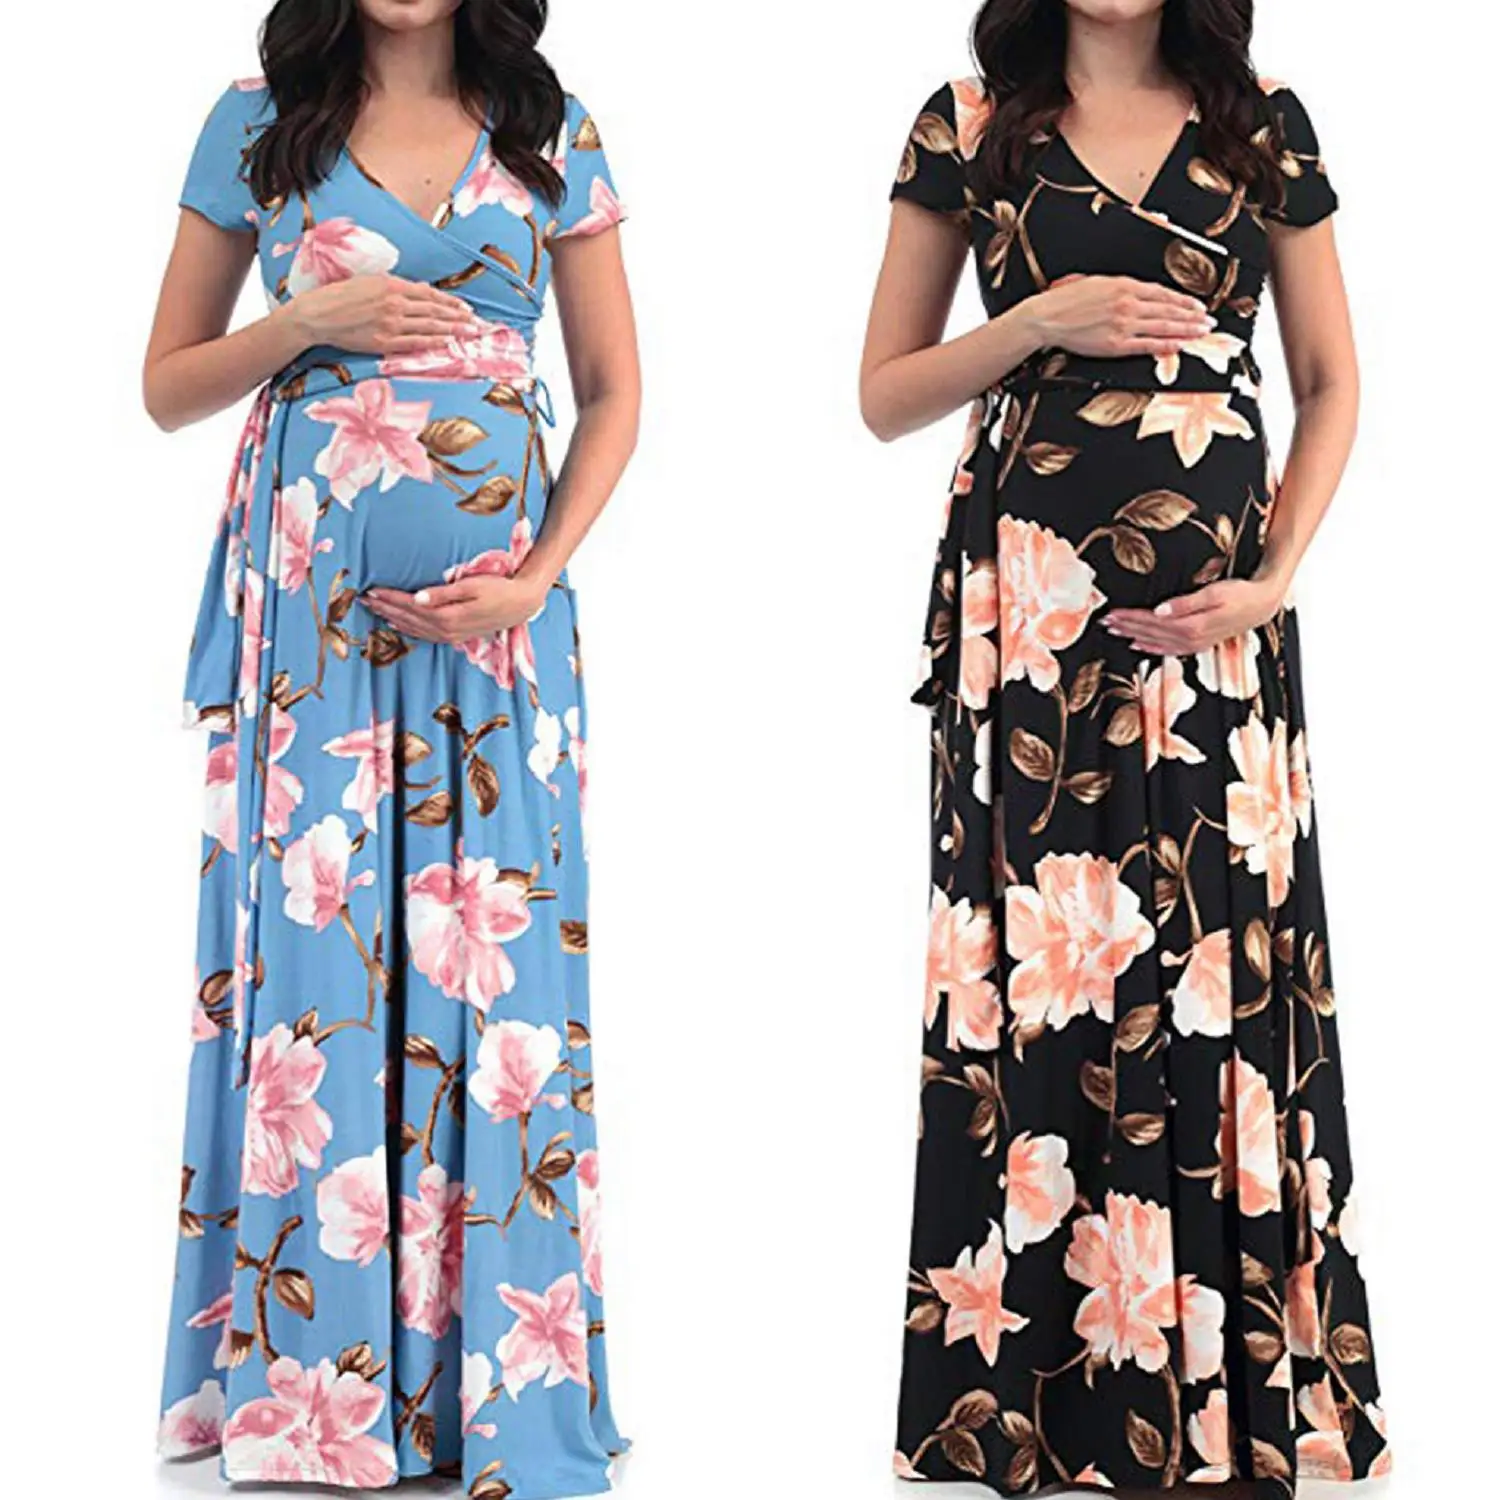 Floral Plus Size Maternity Dresses ...